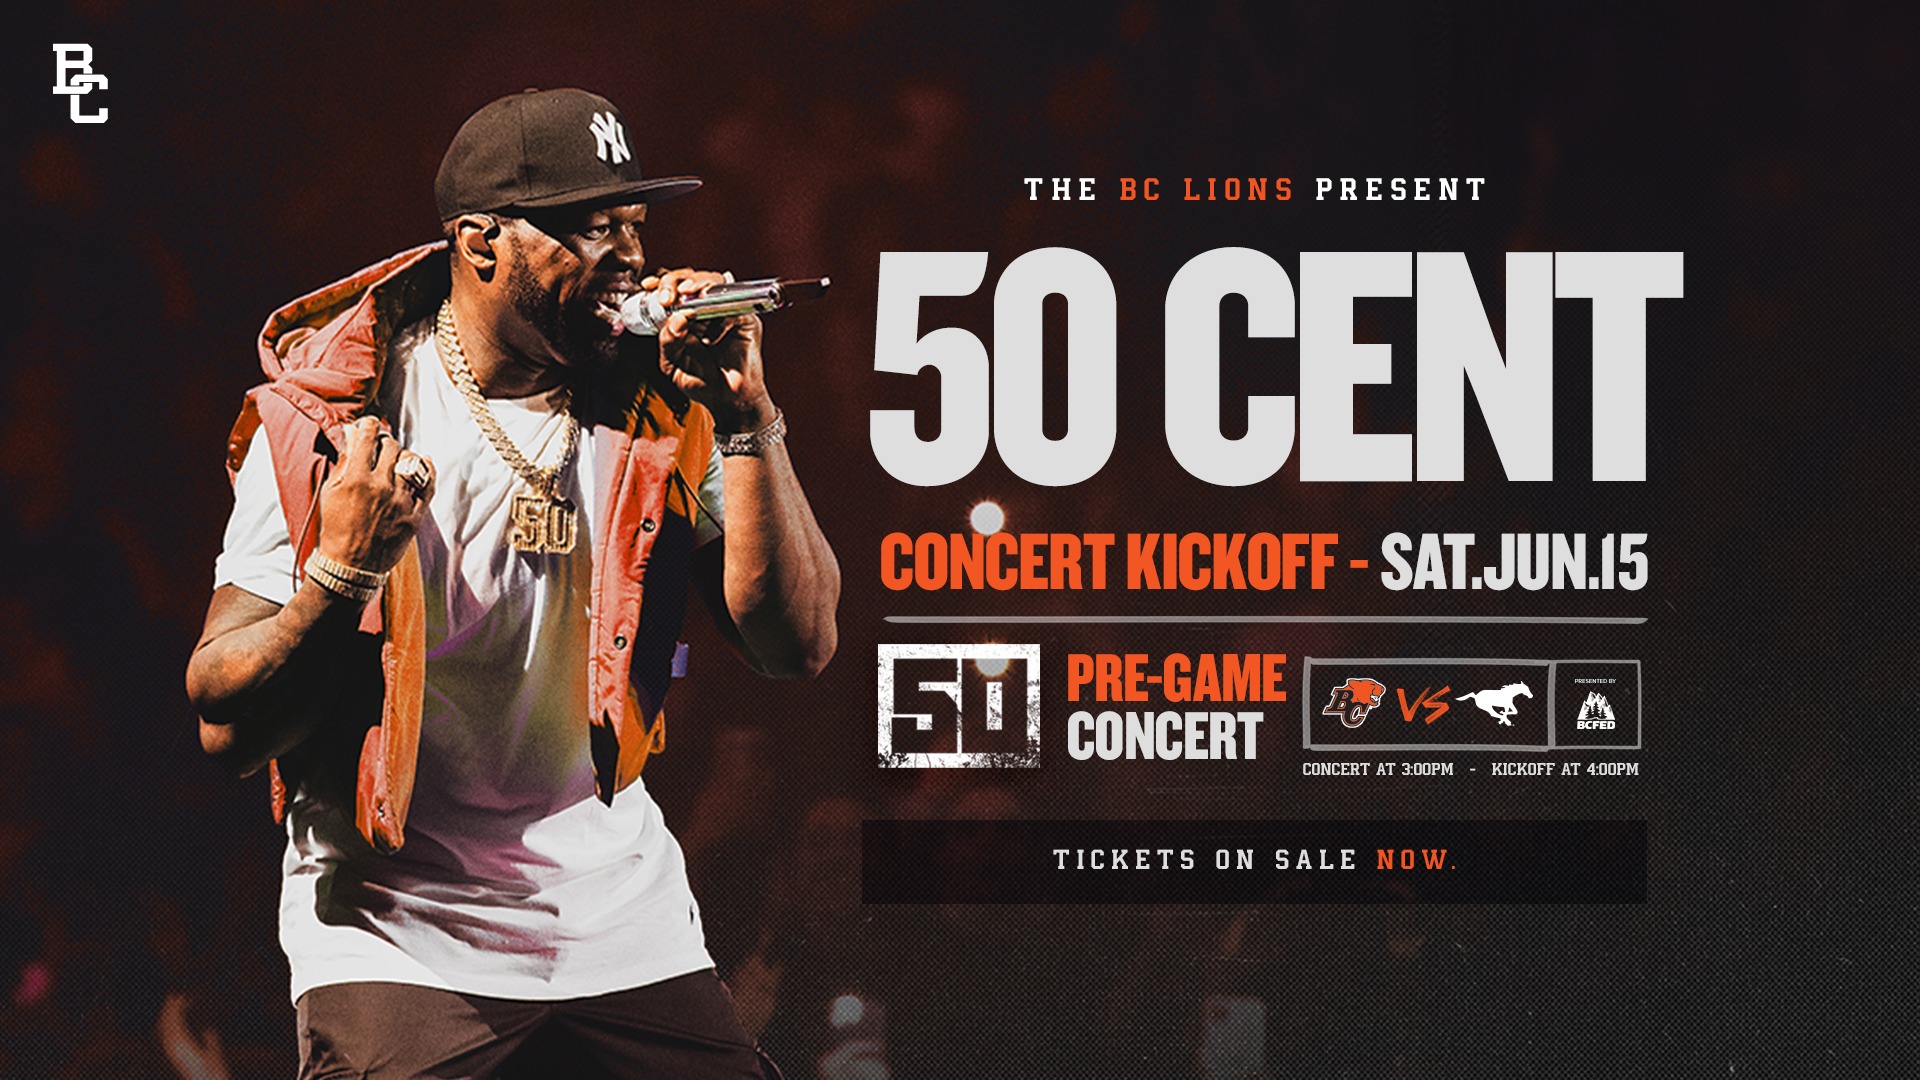 Grammy & EmmyAward Winner 50 Cent To Rock Concert Kickoff